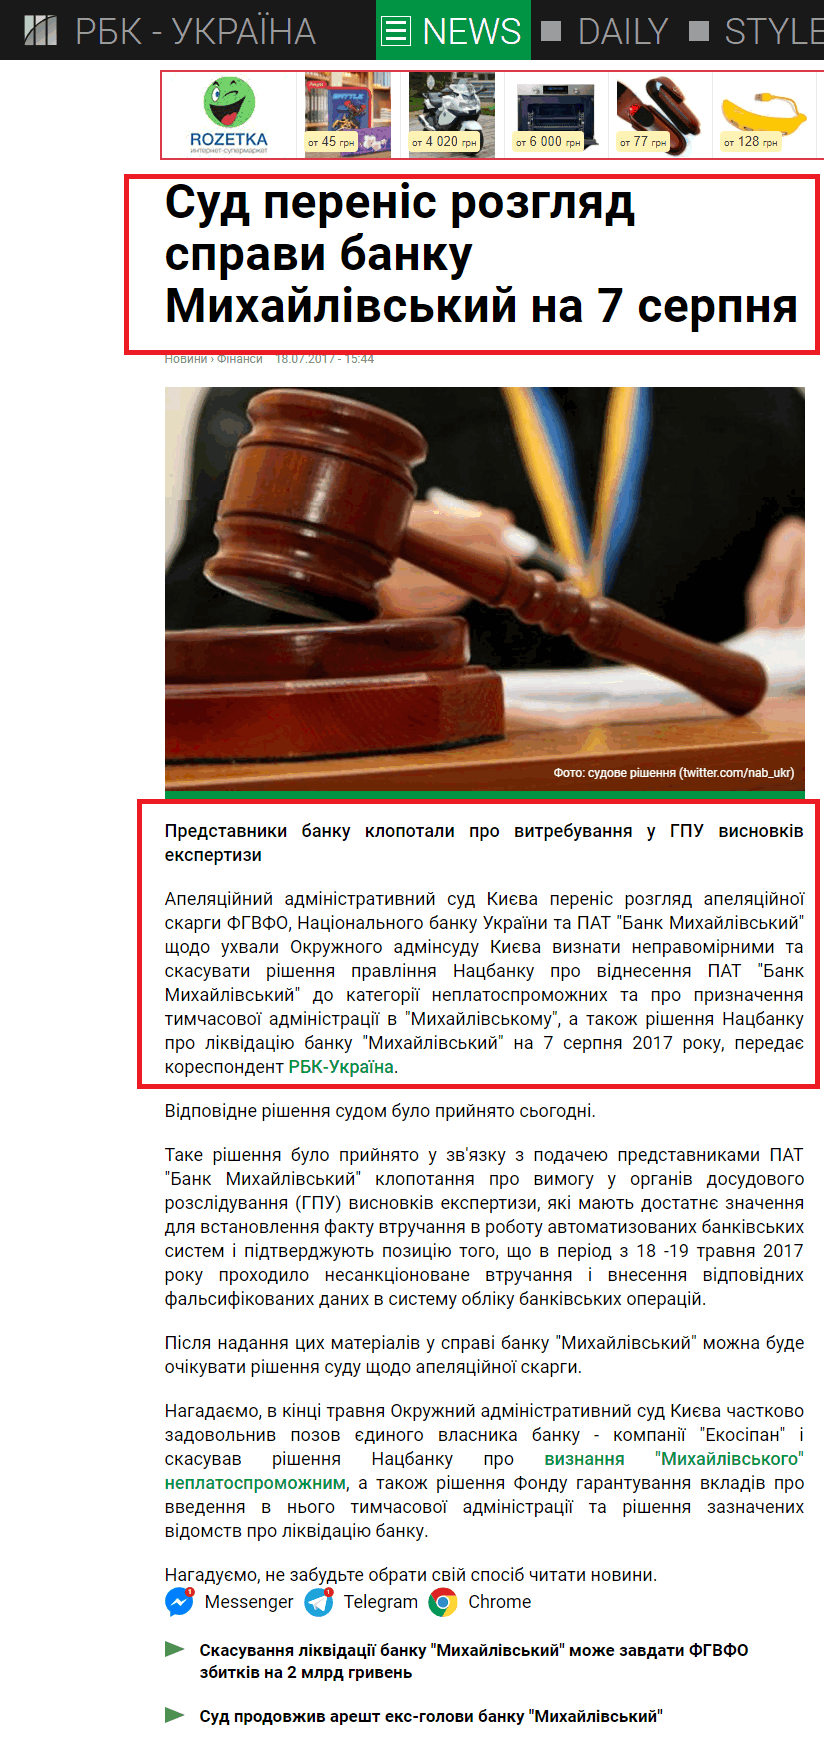 https://www.rbc.ua/ukr/news/sud-perenes-rassmotrenie-dela-banka-mihaylovskiy-1500381870.html